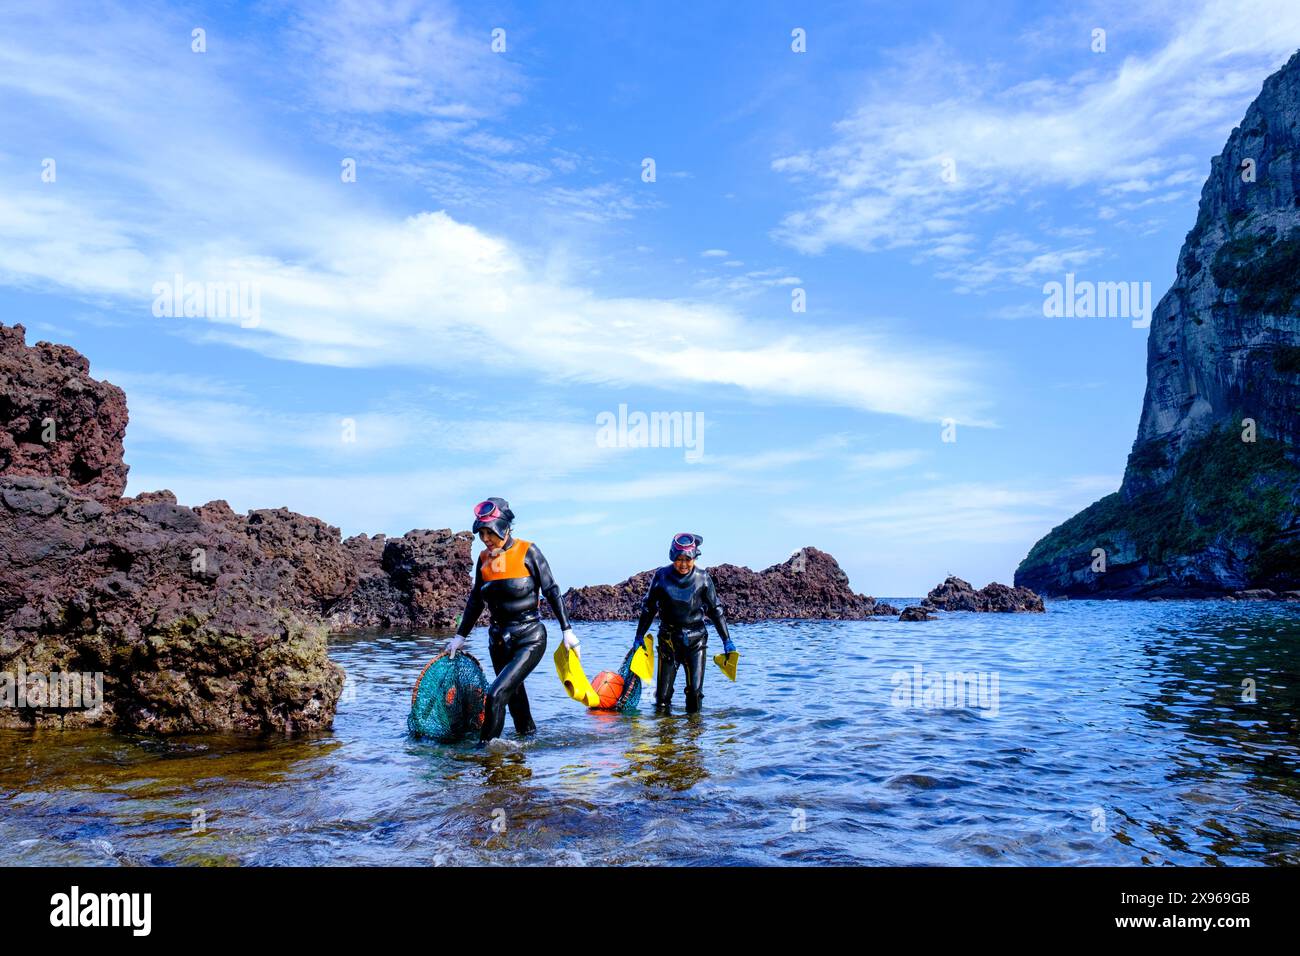 Haenyeo femmes, célèbres pour plonger dans leurs quatre-vingts et retenir leur souffle pendant deux minutes, plonger pour la conque, poulpe, algues et autres mers Banque D'Images